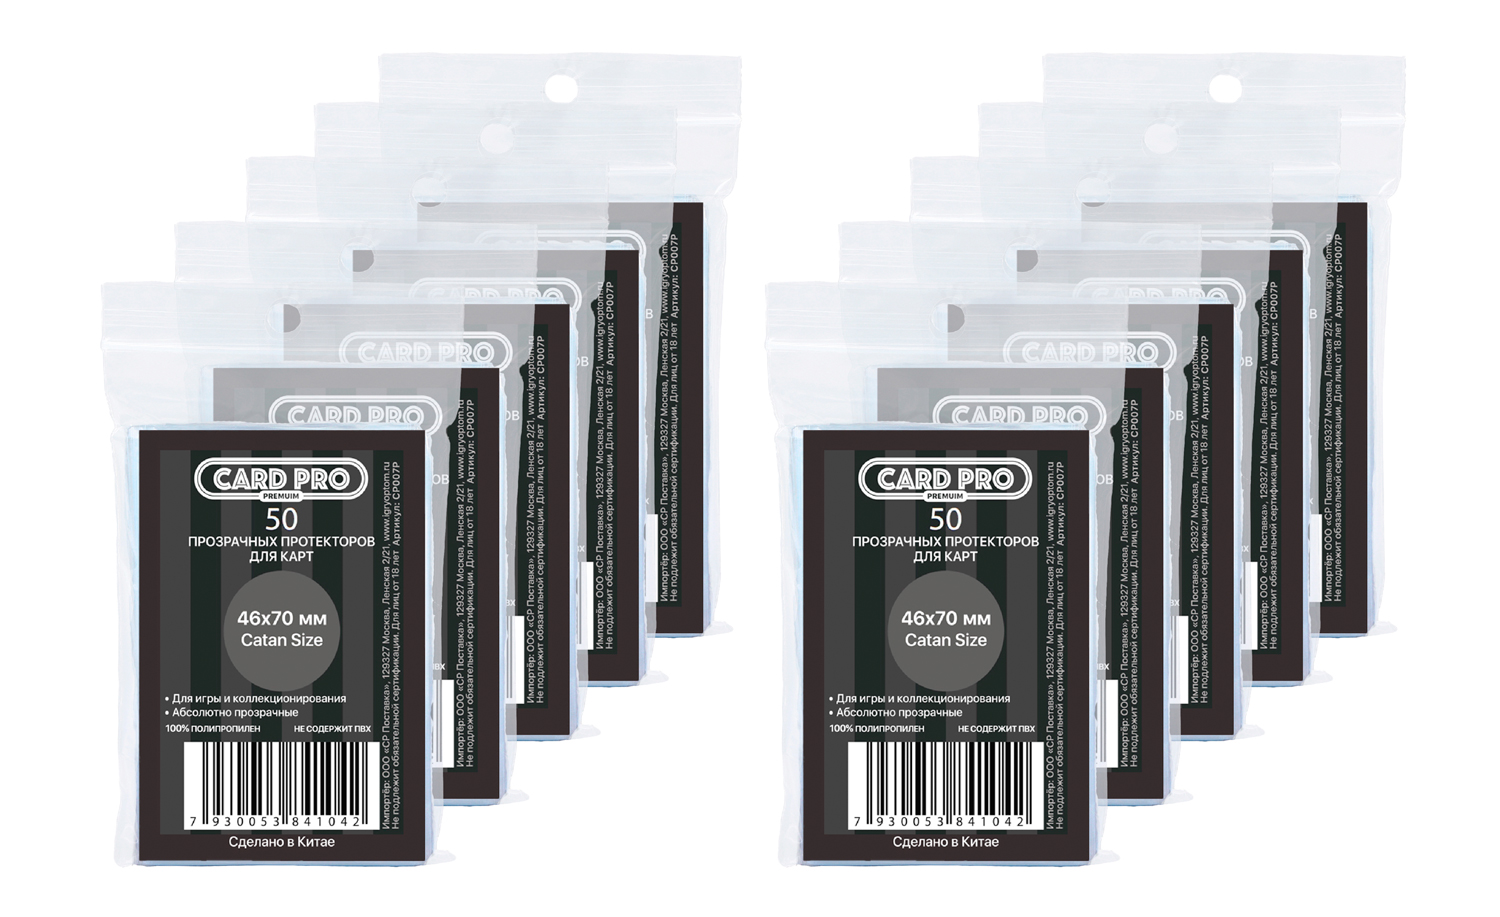 Прозрачные протекторы Card-Pro PREMIUM Catan Size 46x70 мм, 10 пачек по 50 шт